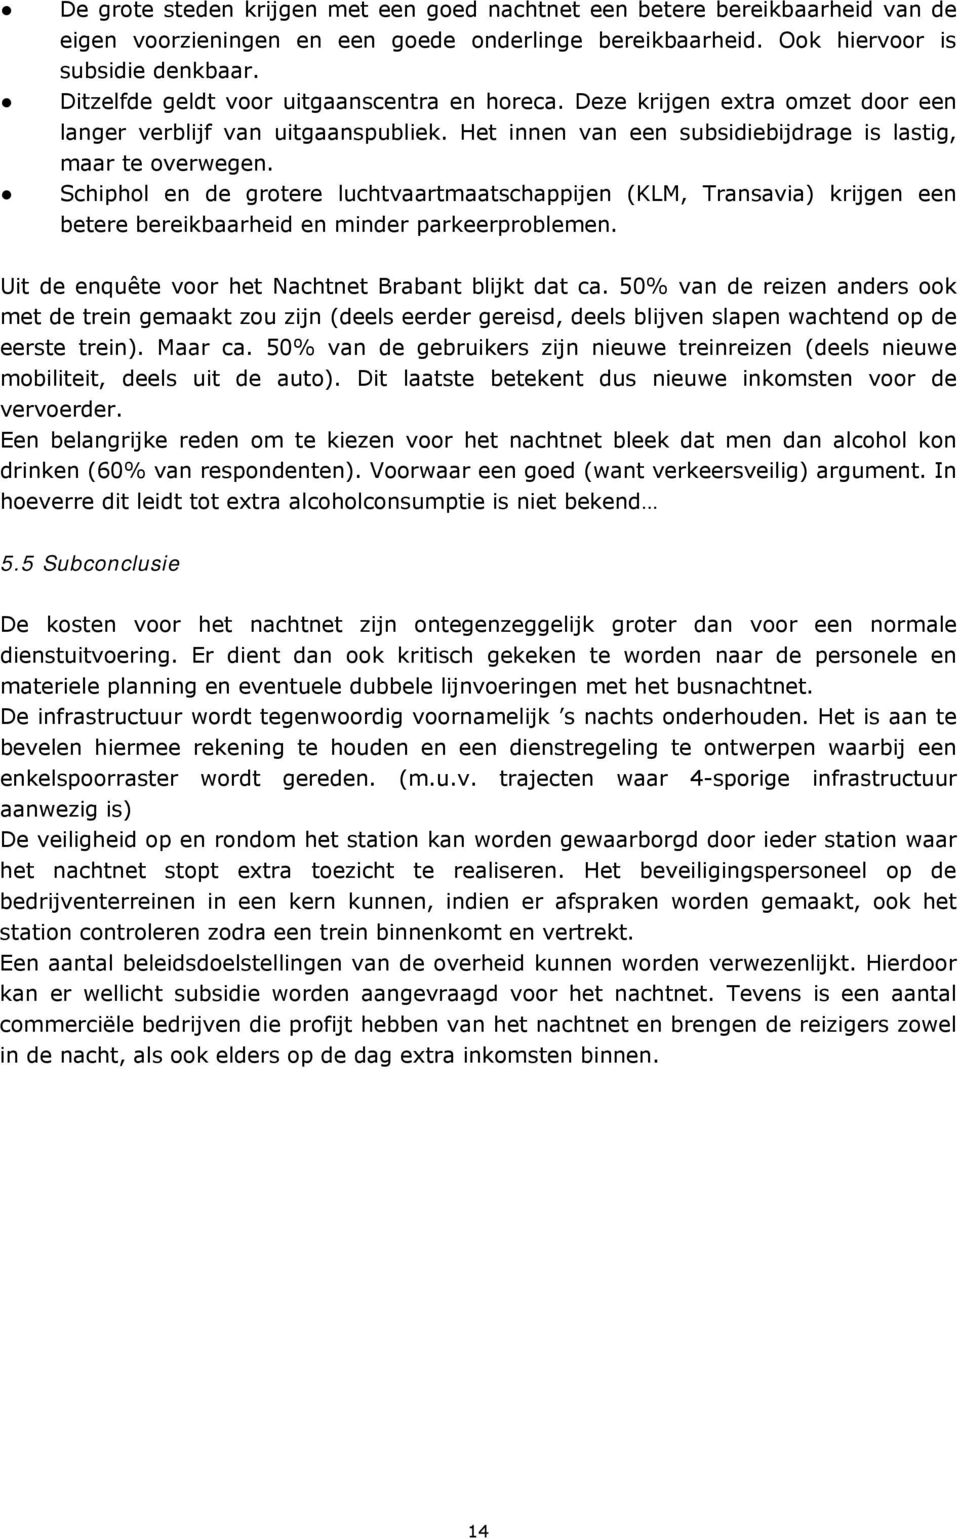 Schiphol en de grotere luchtvaartmaatschappijen (KLM, Transavia) krijgen een betere bereikbaarheid en minder parkeerproblemen. Uit de enquête voor het Nachtnet Brabant blijkt dat ca.